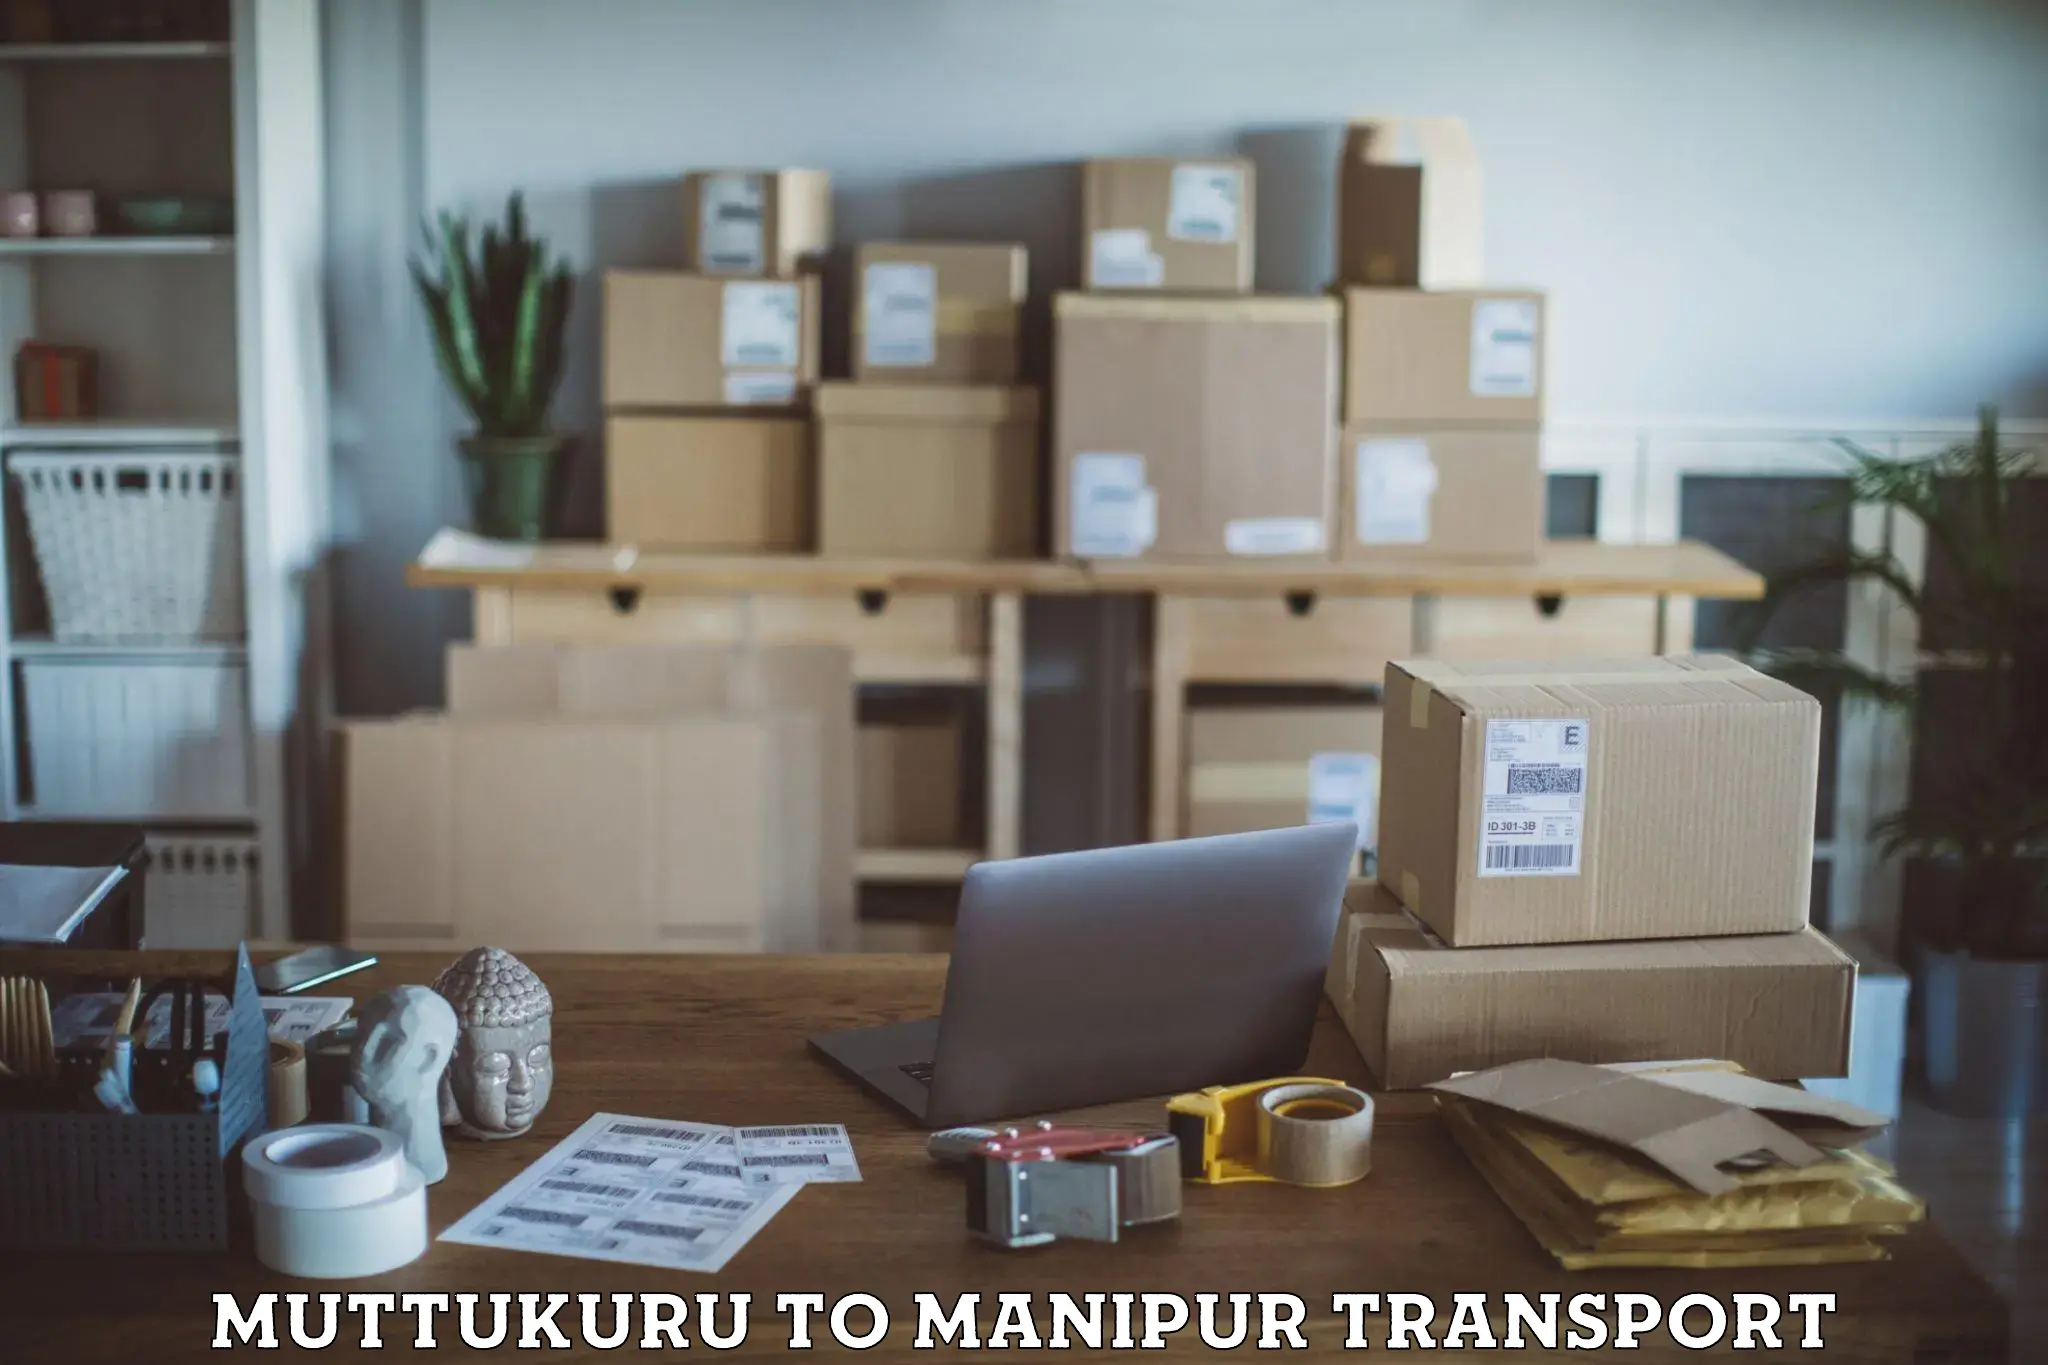 Daily transport service in Muttukuru to Manipur